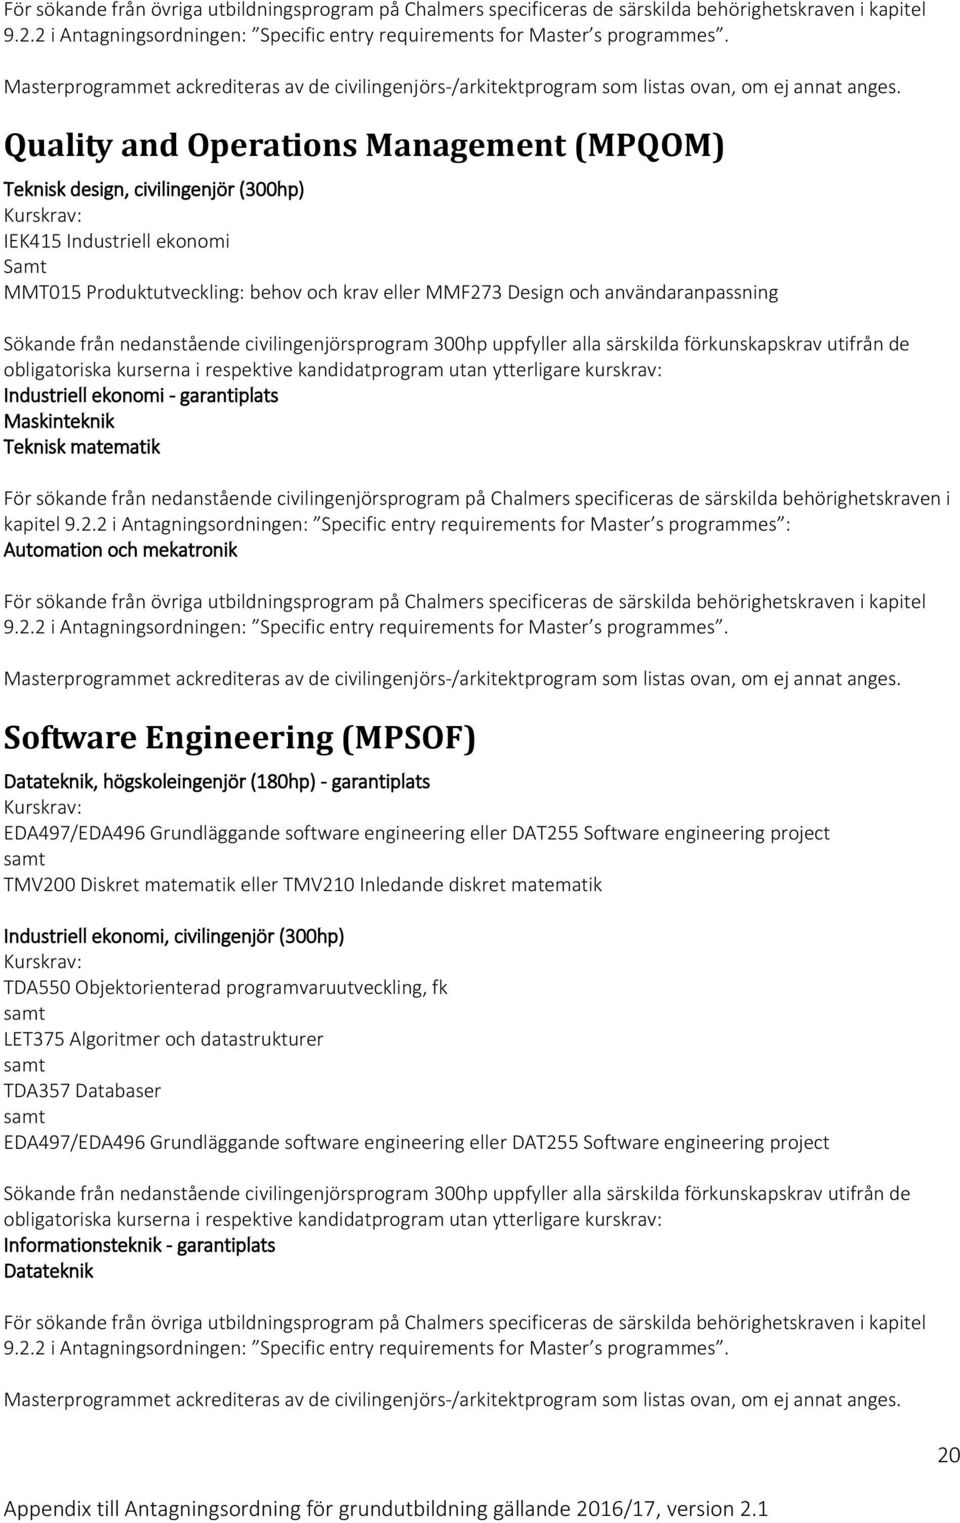 2 i Antagningsordningen: Specific entry requirements for Master s programmes : Automation och mekatronik Software Engineering (MPSOF) Datateknik, högskoleingenjör (180hp) - garantiplats EDA497/EDA496